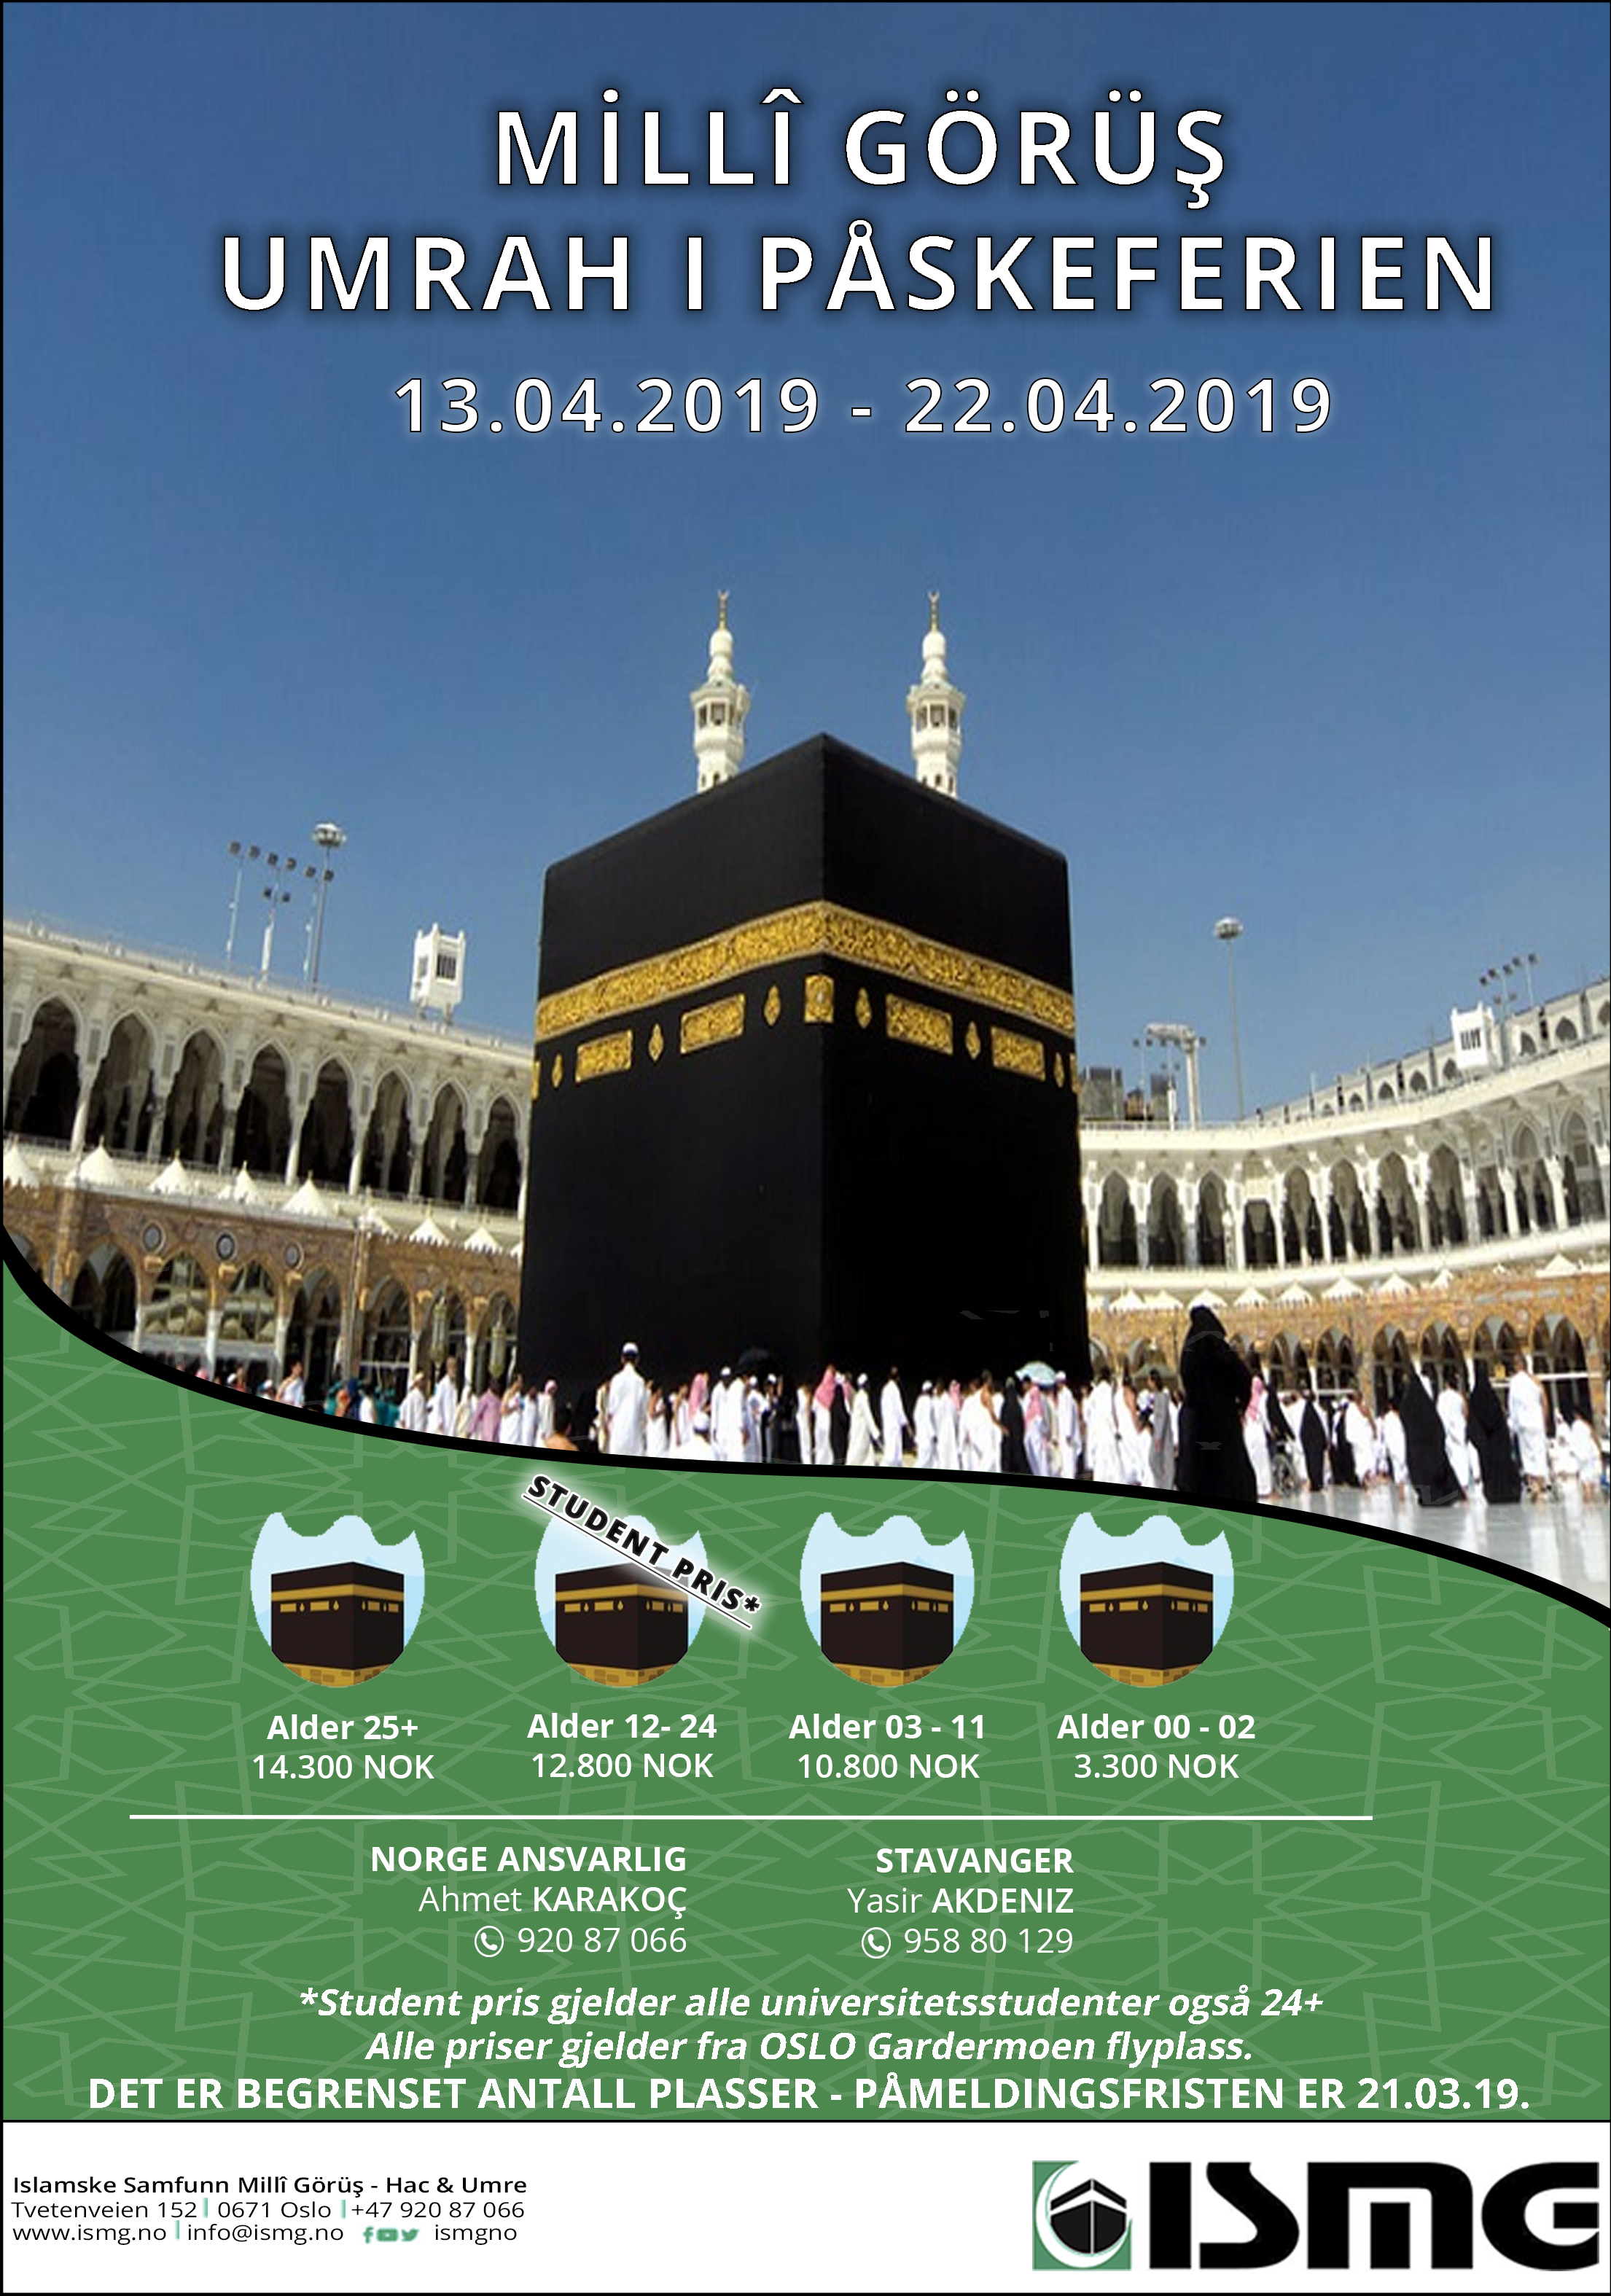 You are currently viewing Reise til Umrah i påskeferien 2019